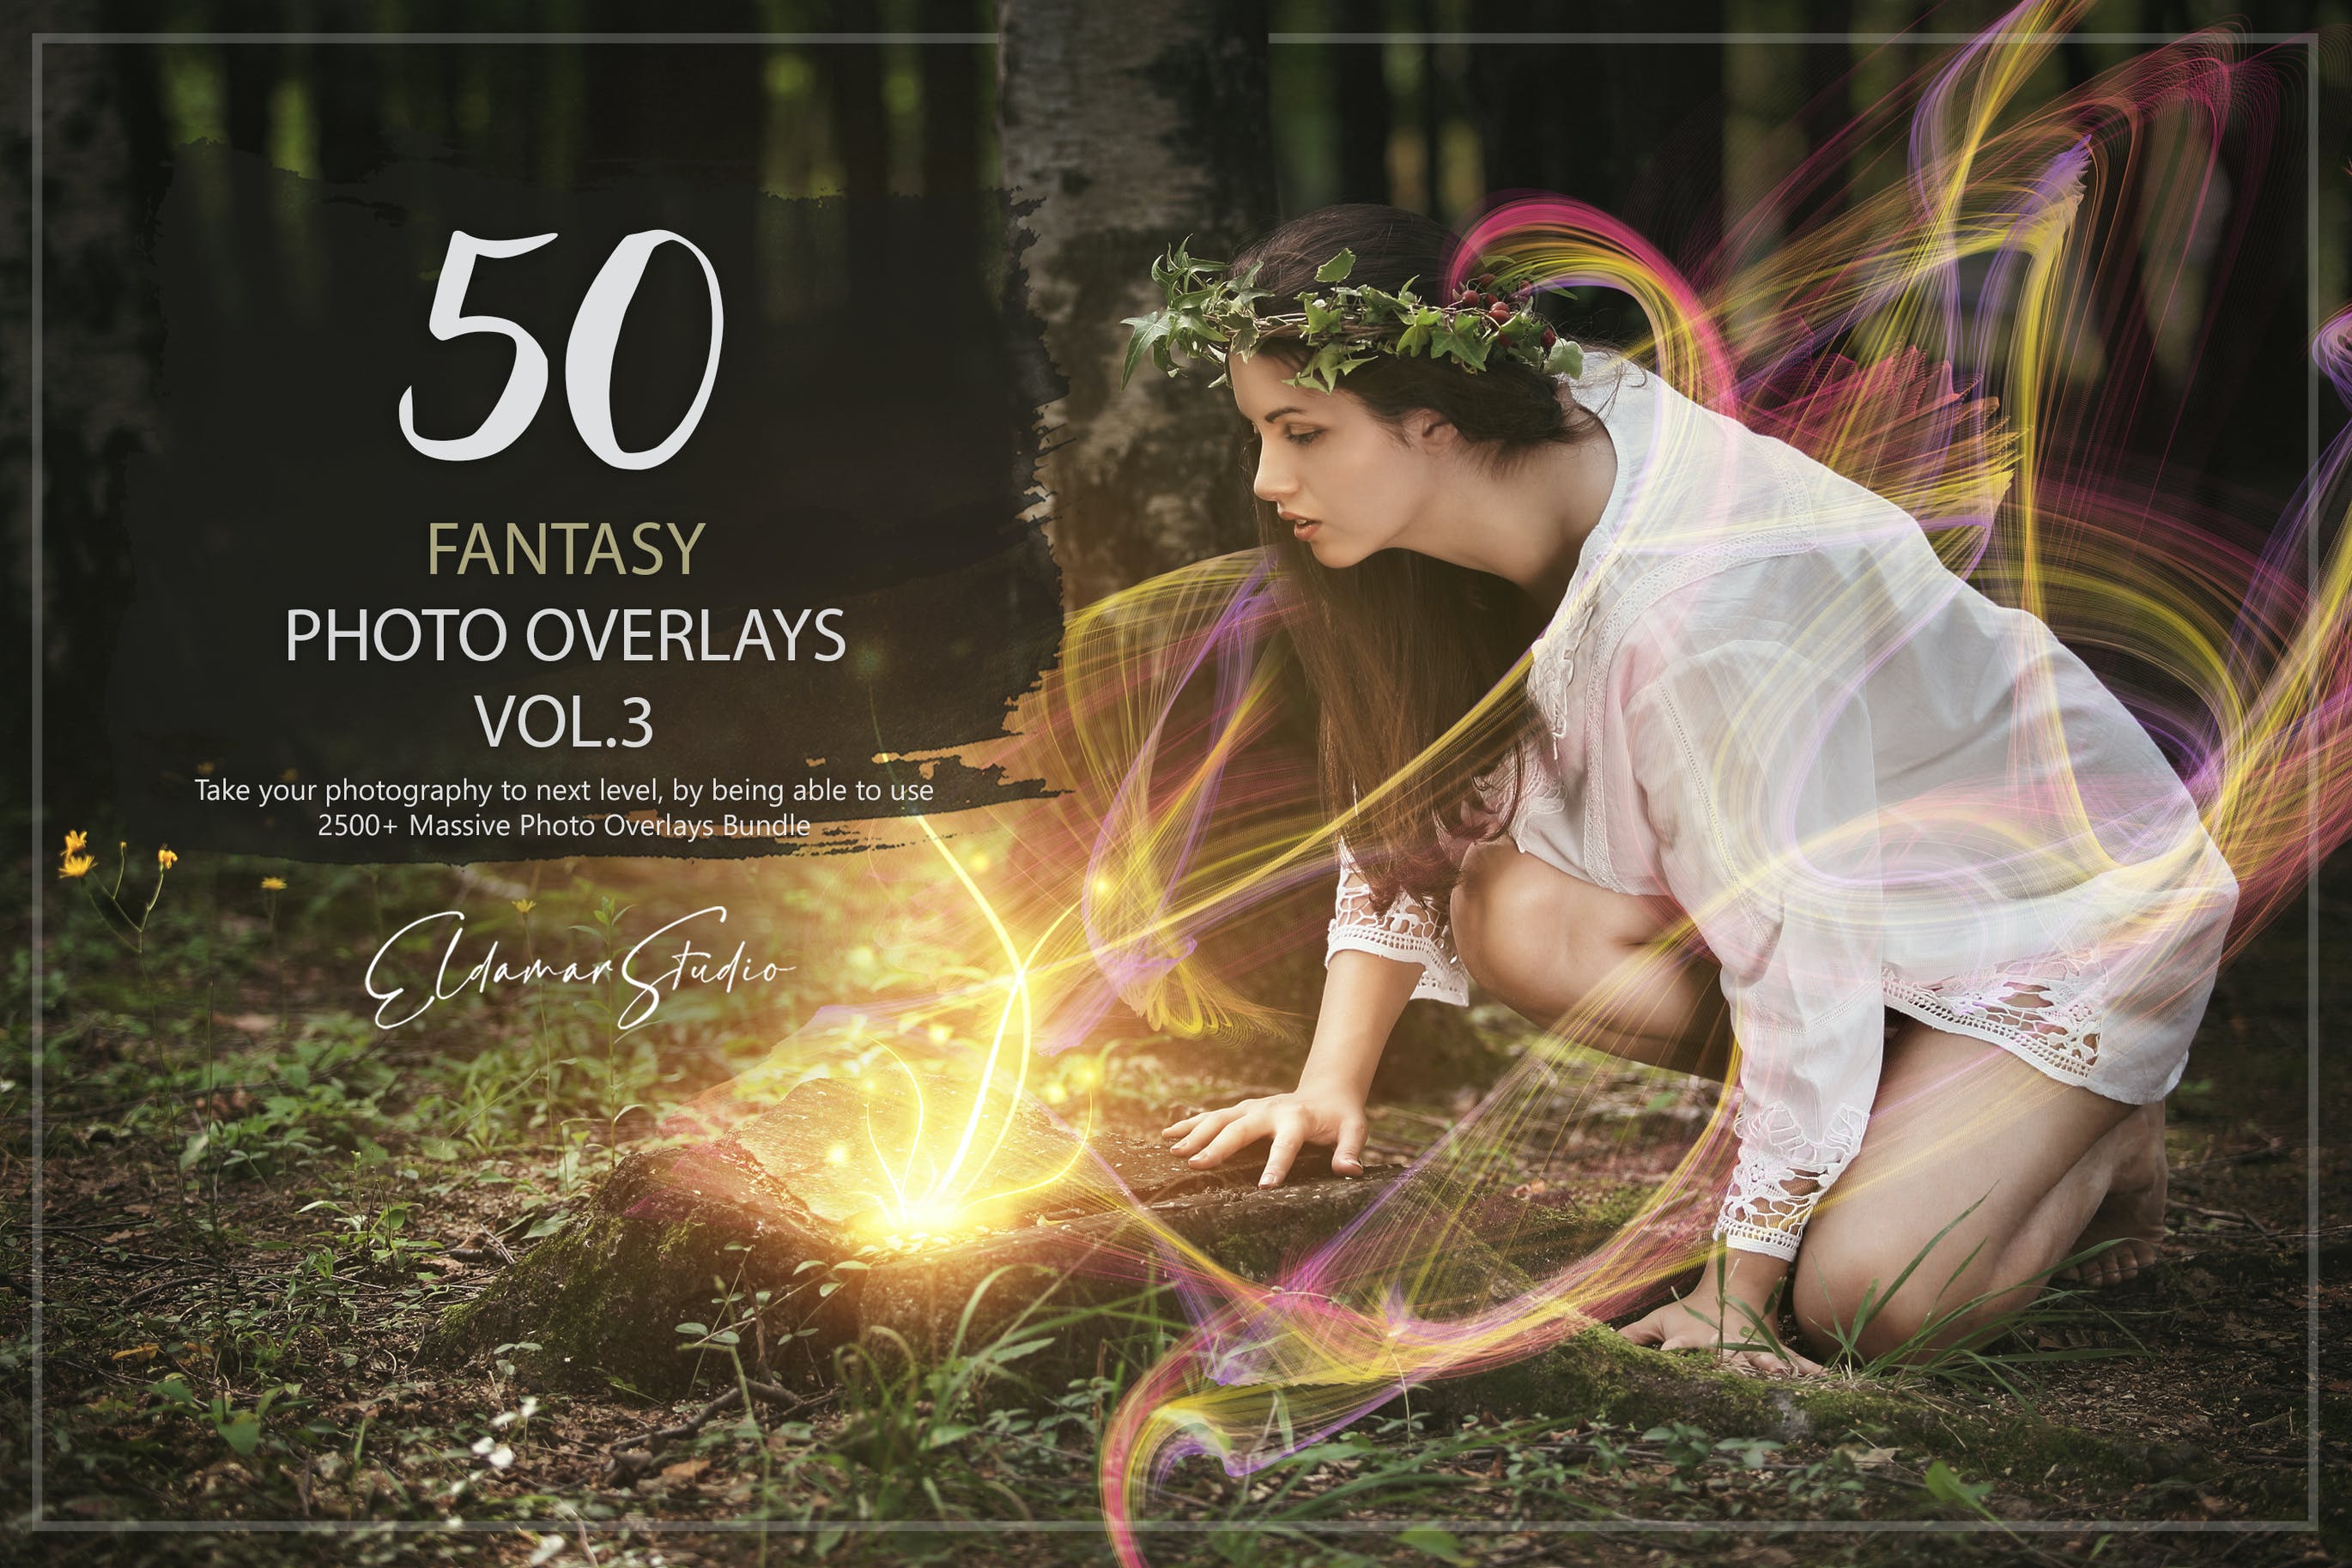 50个梦幻彩色几何线条照片叠层背景素材v3 50 Fantasy Photo Overlays – Vol. 3 插件预设 第1张